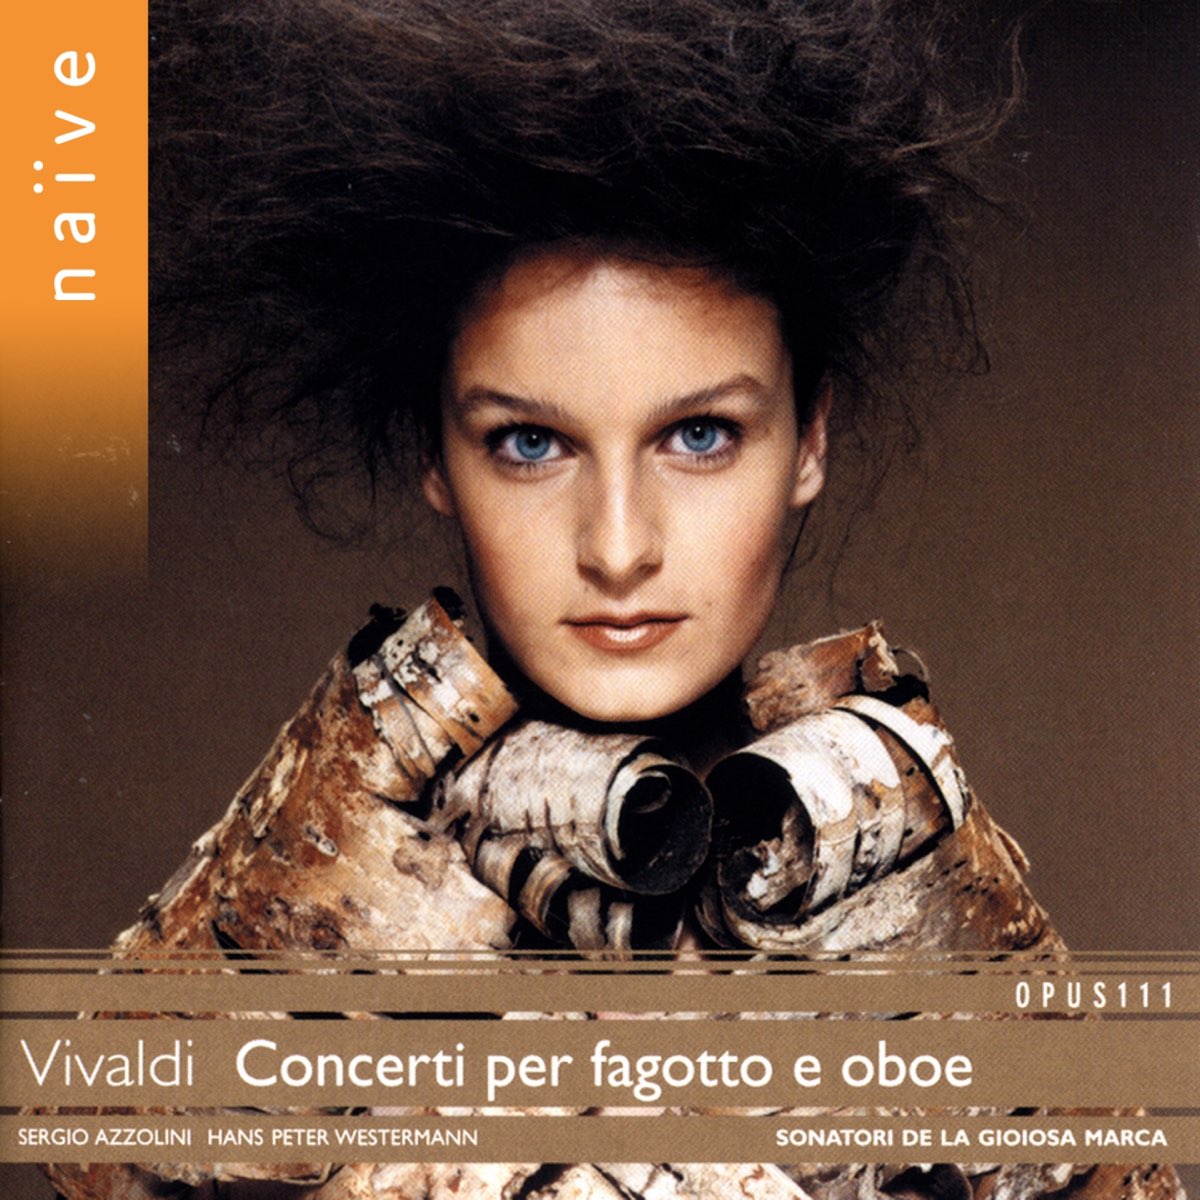 Vivaldi: Concerti per fagotto e oboe - Album di Sergio Azzolini, Sonatori  de la Gioiosa Marca & Hans Peter Westermann - Apple Music